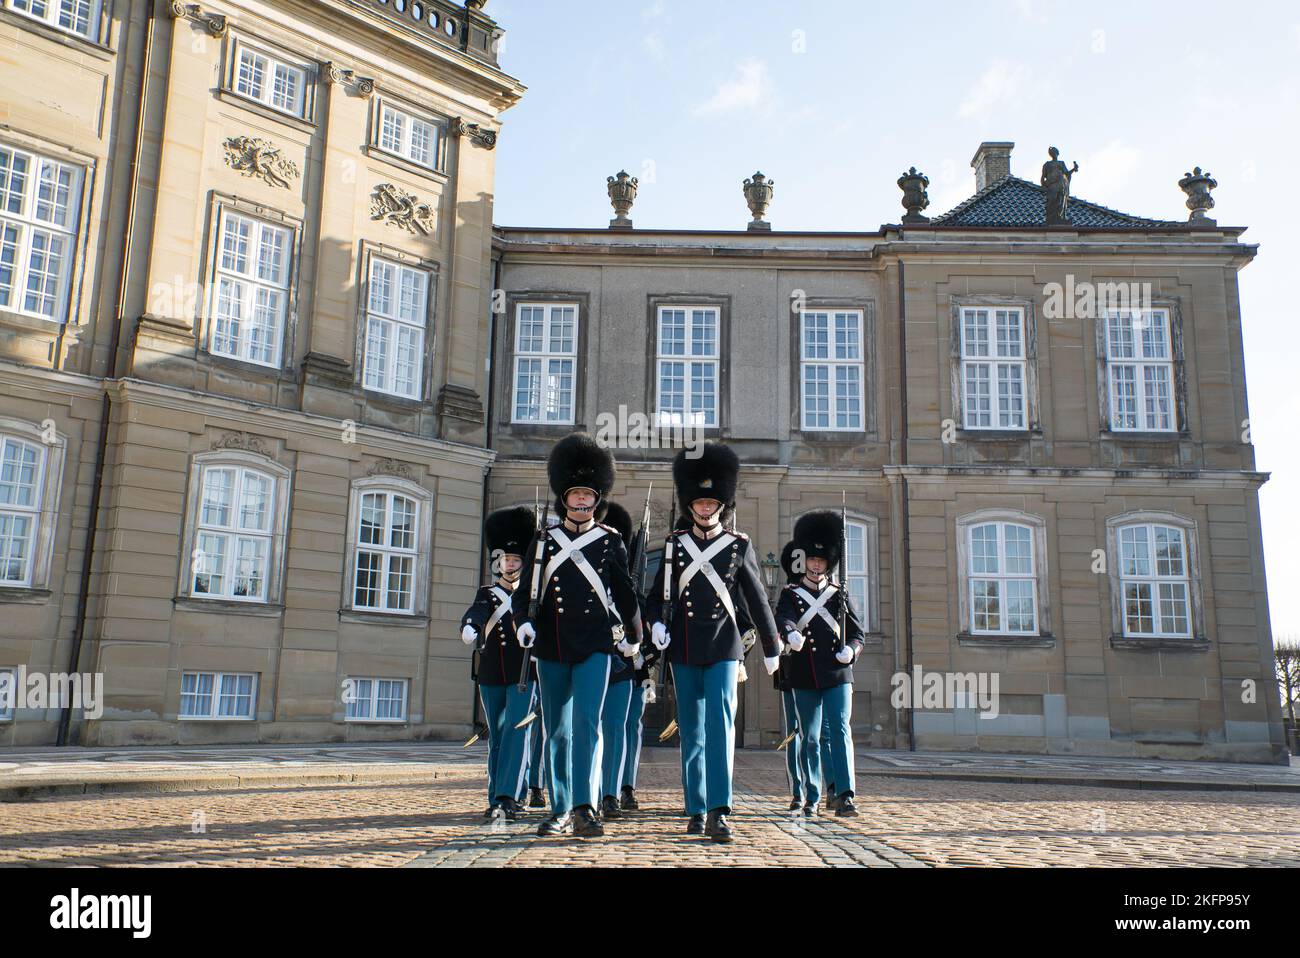 Les gardes royaux (Kongelige Livgardes) défilent lors de la « transformation de la garde » au palais d'Amalienborg, Copenhague (vagtskifte) Banque D'Images